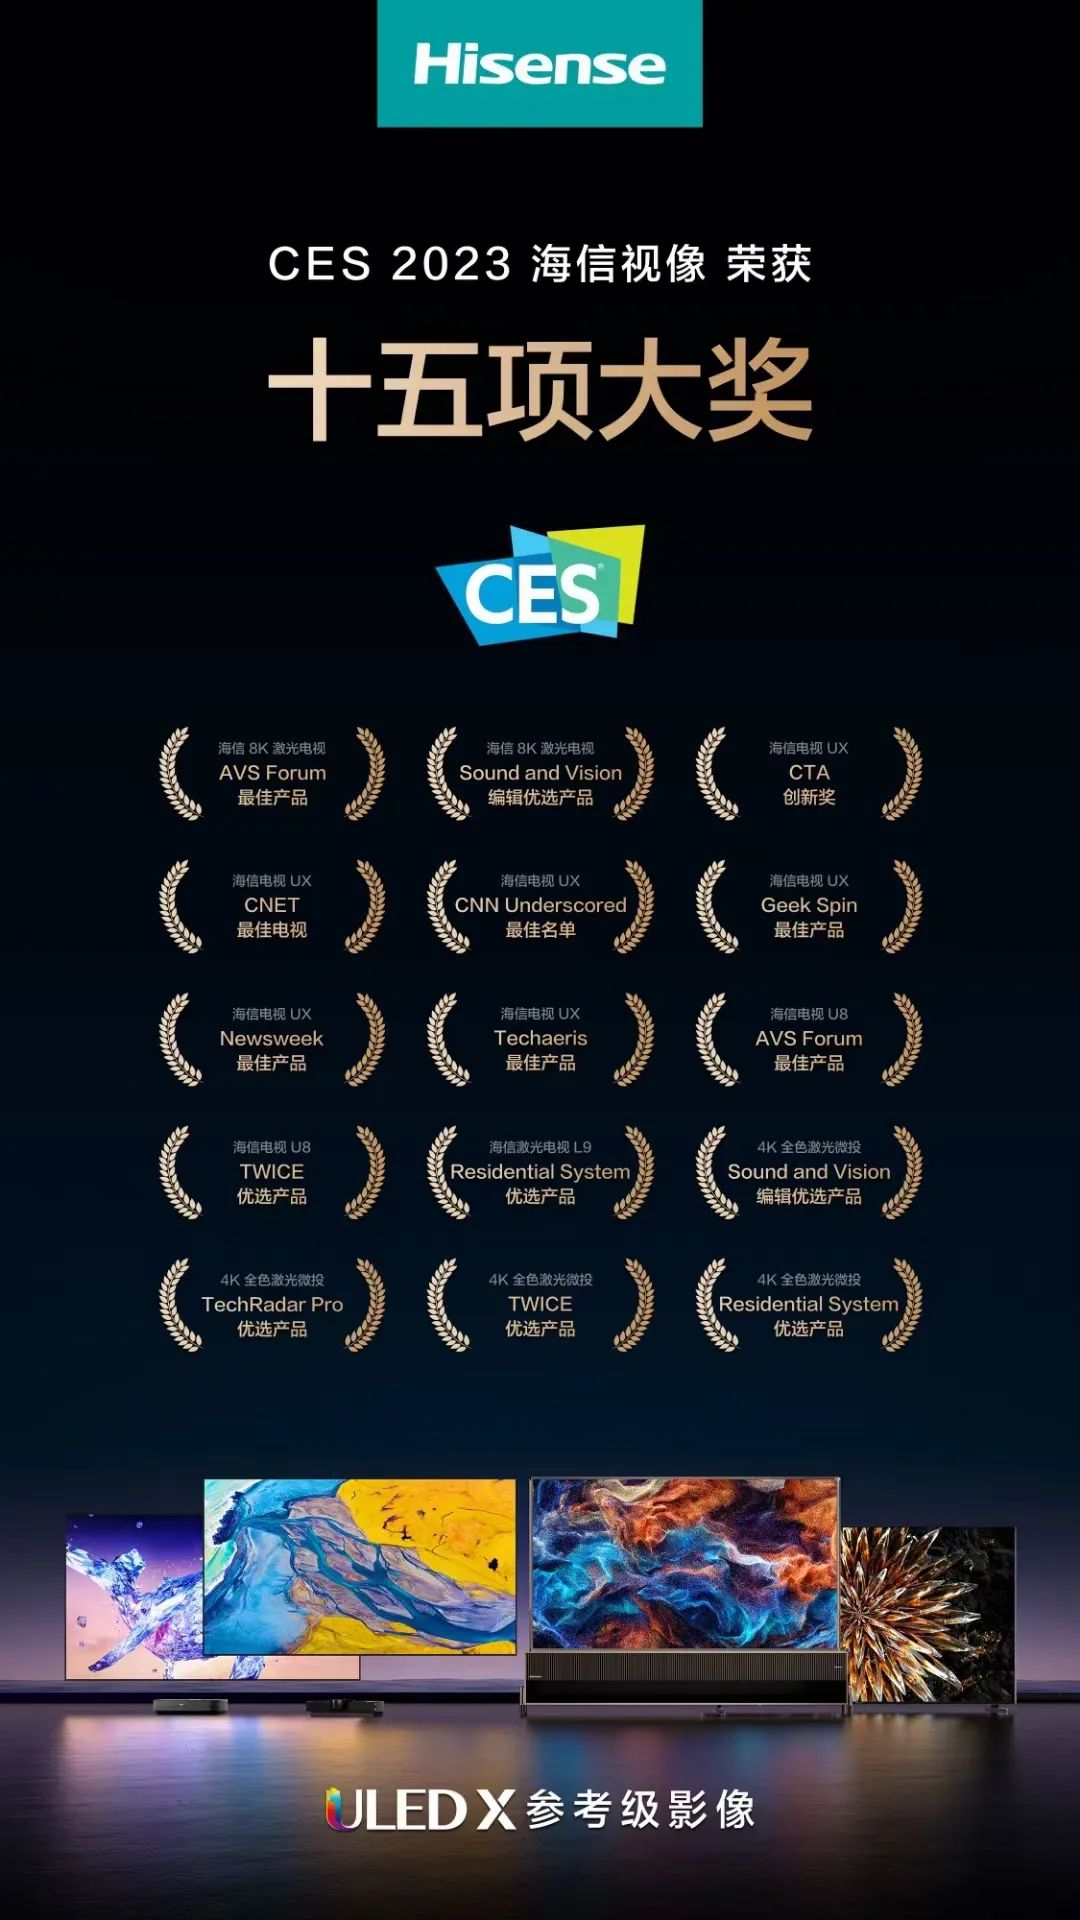 “最佳”“优选”！CES 15项国际大奖授予海信视像